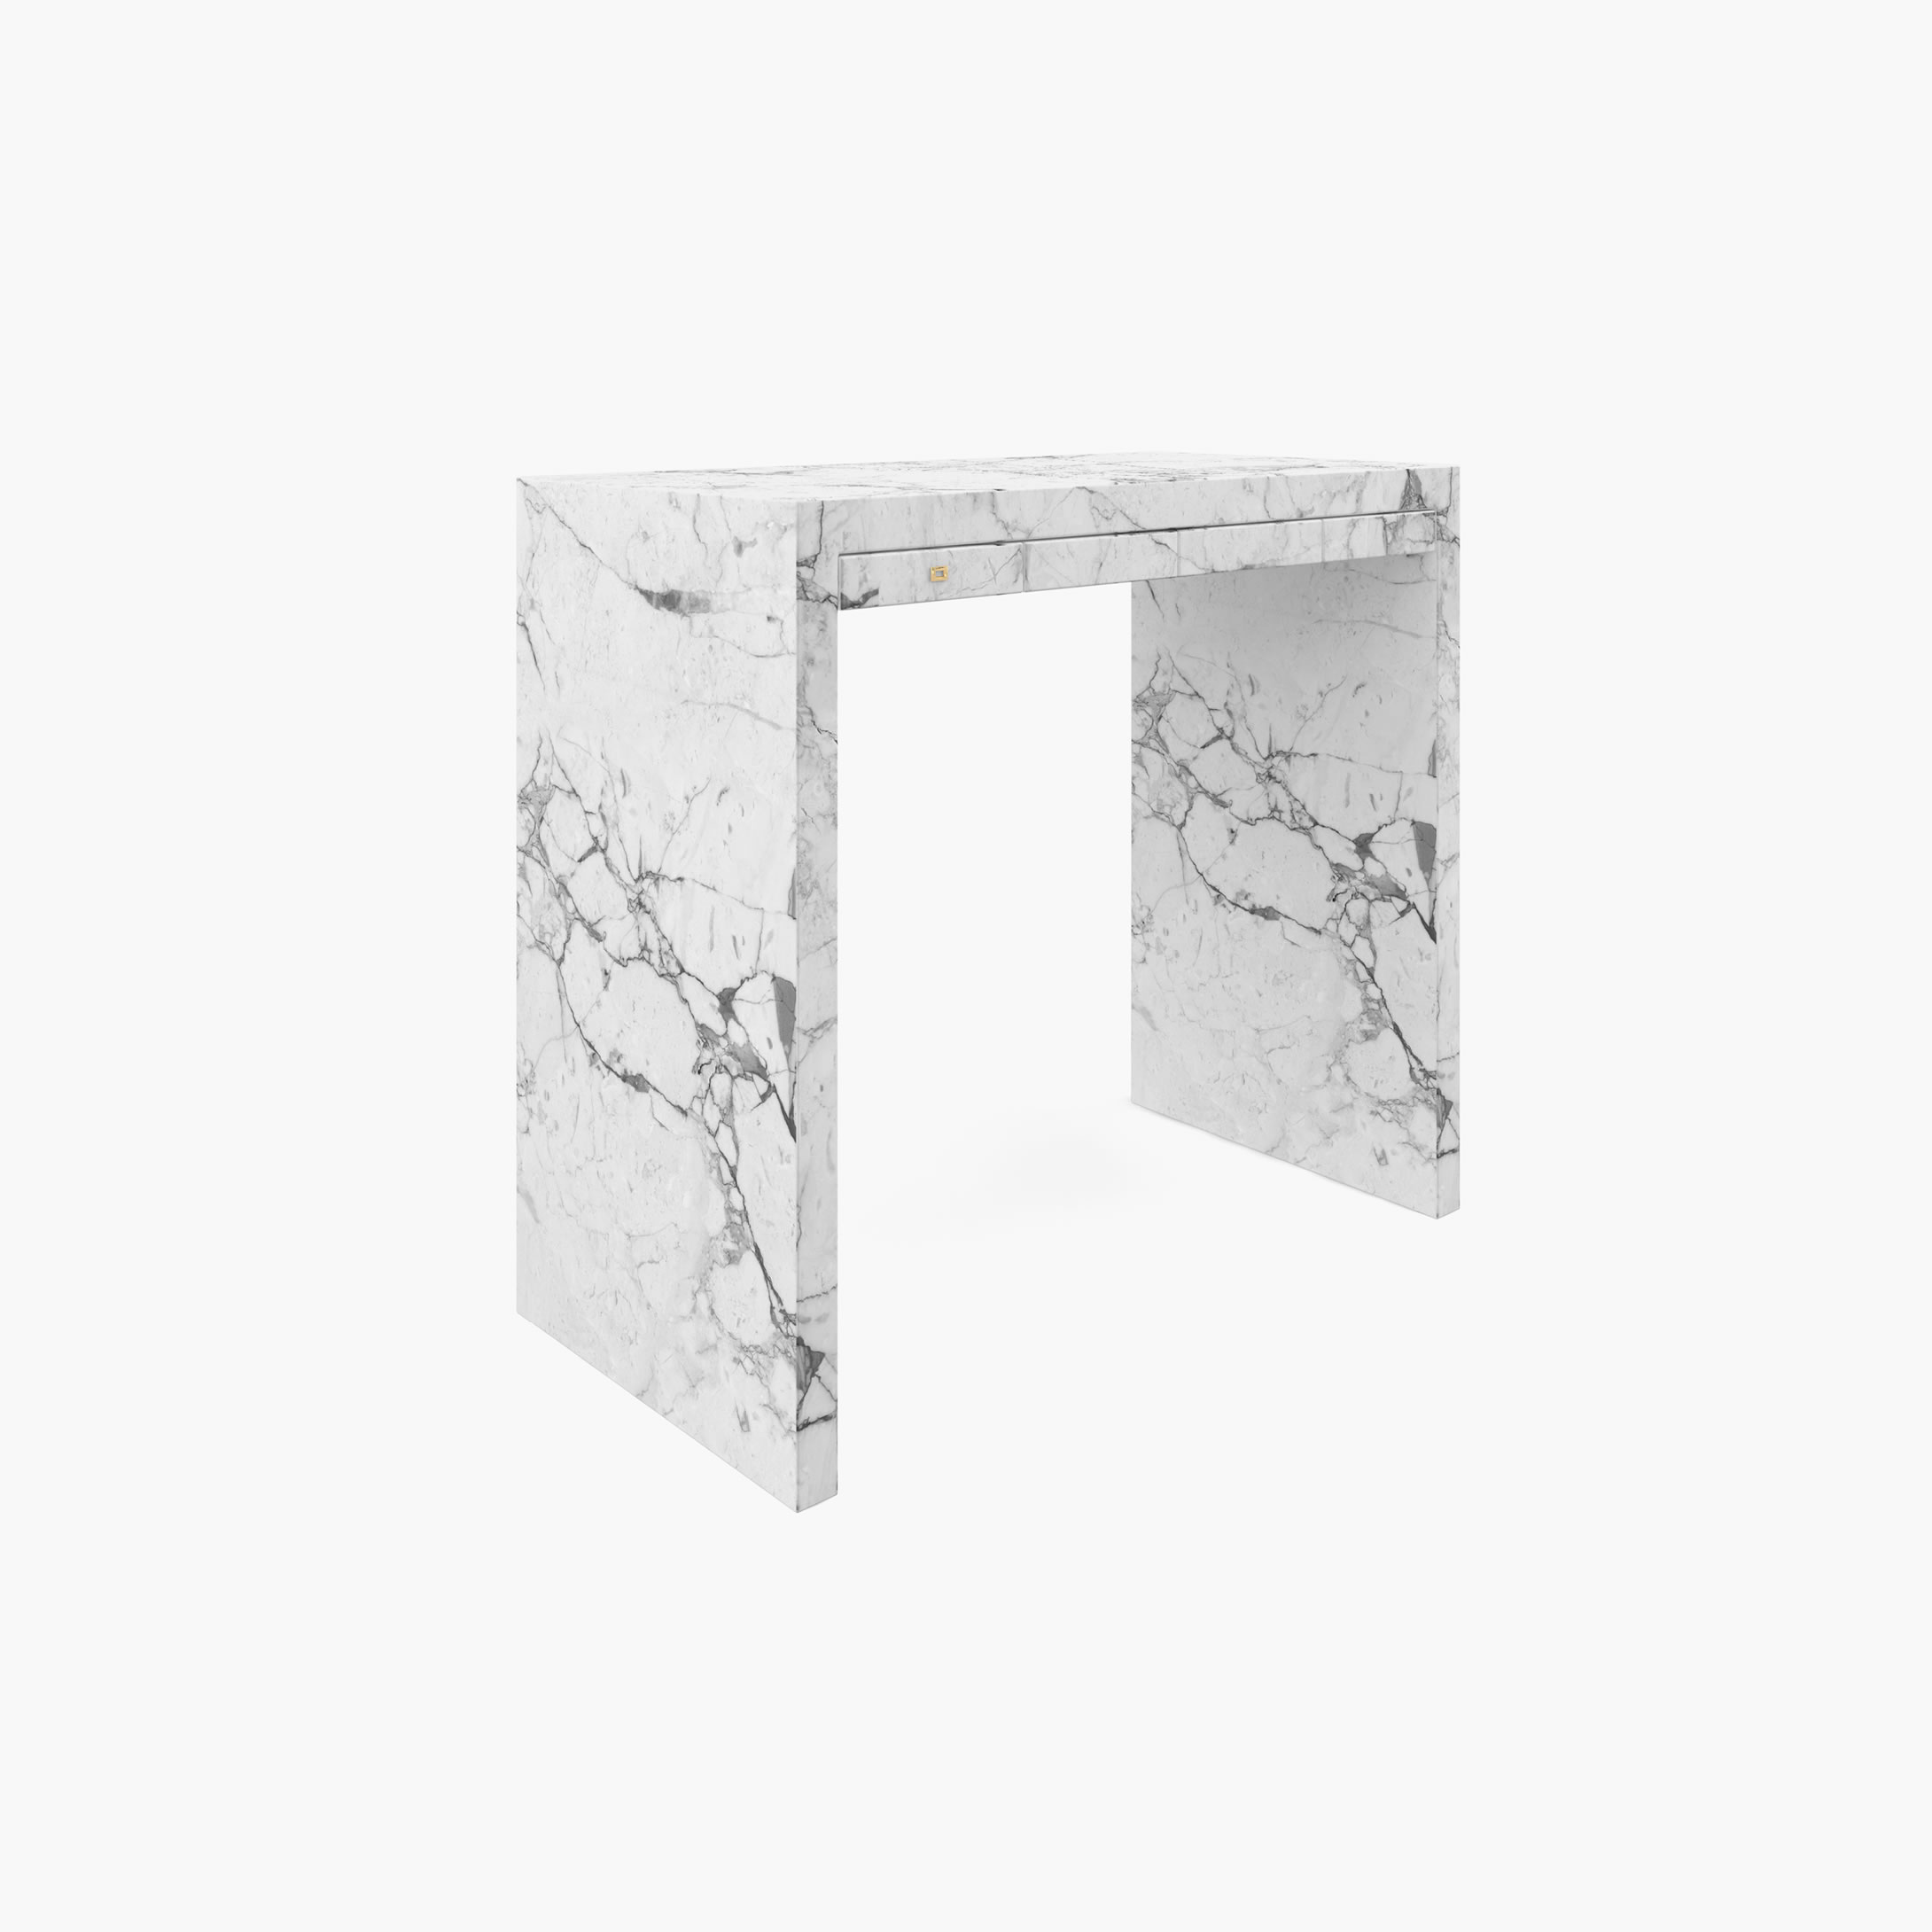 Konsole Schubladen Weiss Arabescato Marmor minimalistisch Wohnzimmer Innenarchitektur Konsolen  Sideboards FS 27 FELIX SCHWAKE